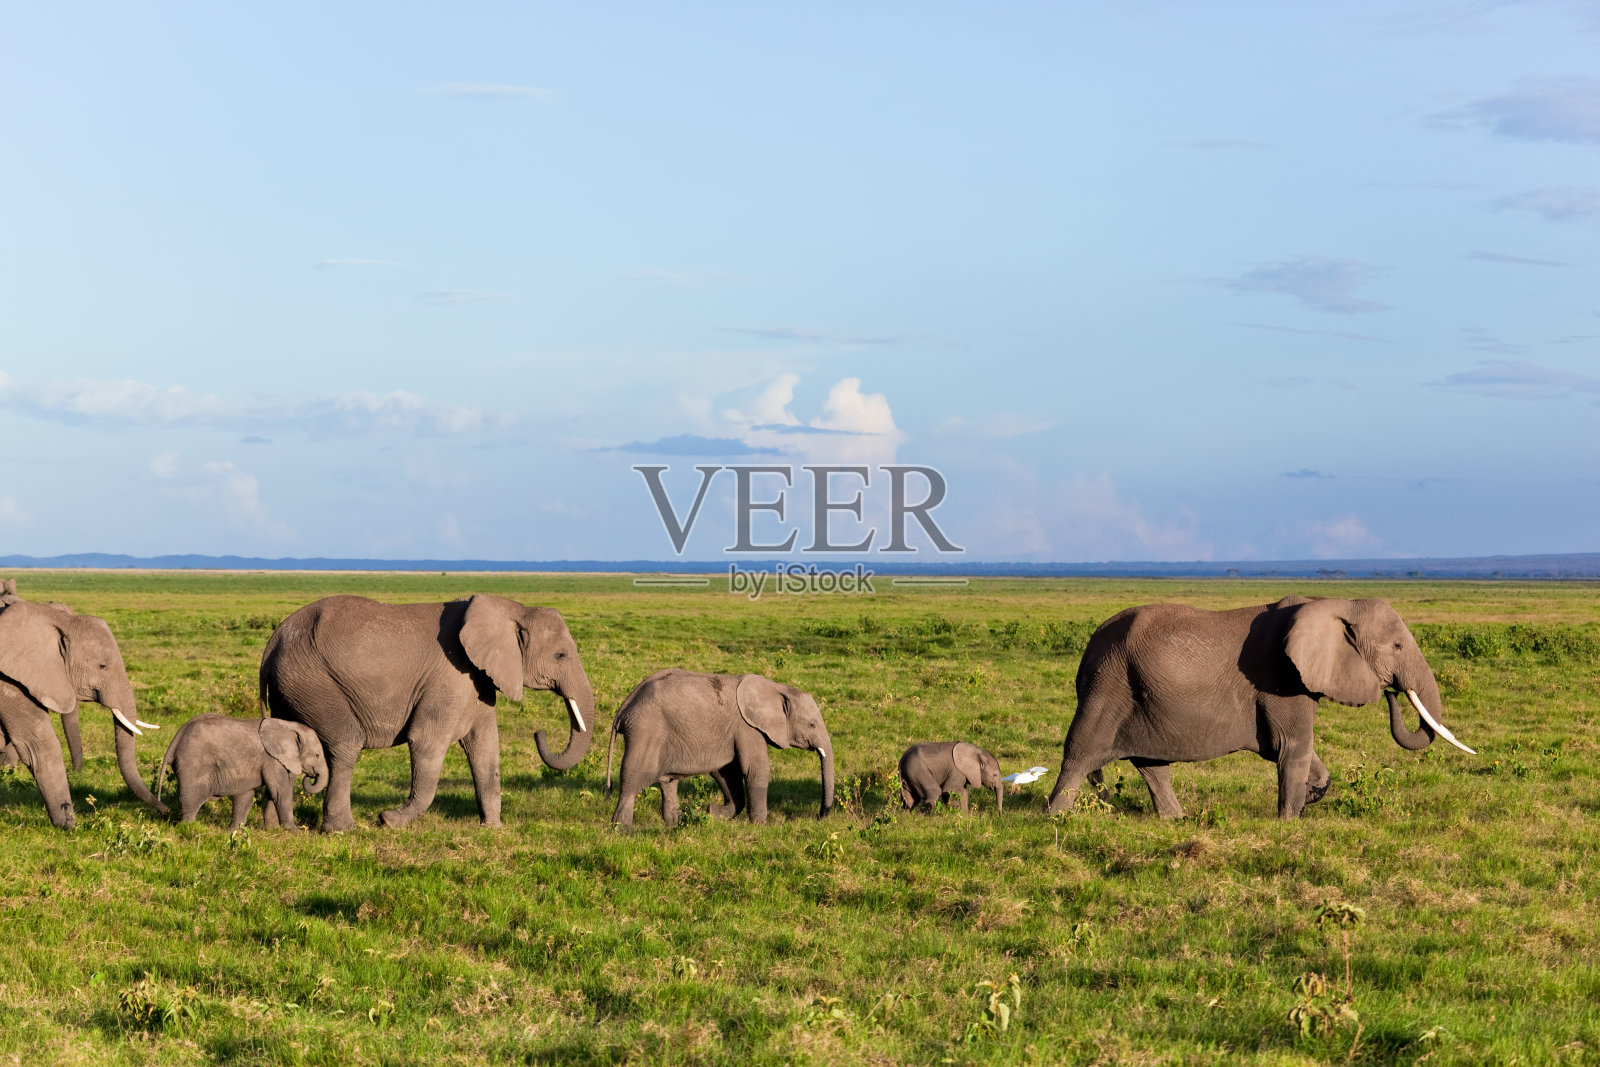 大象在稀树大草原上成群活动。非洲肯尼亚安博塞利的狩猎之旅照片摄影图片